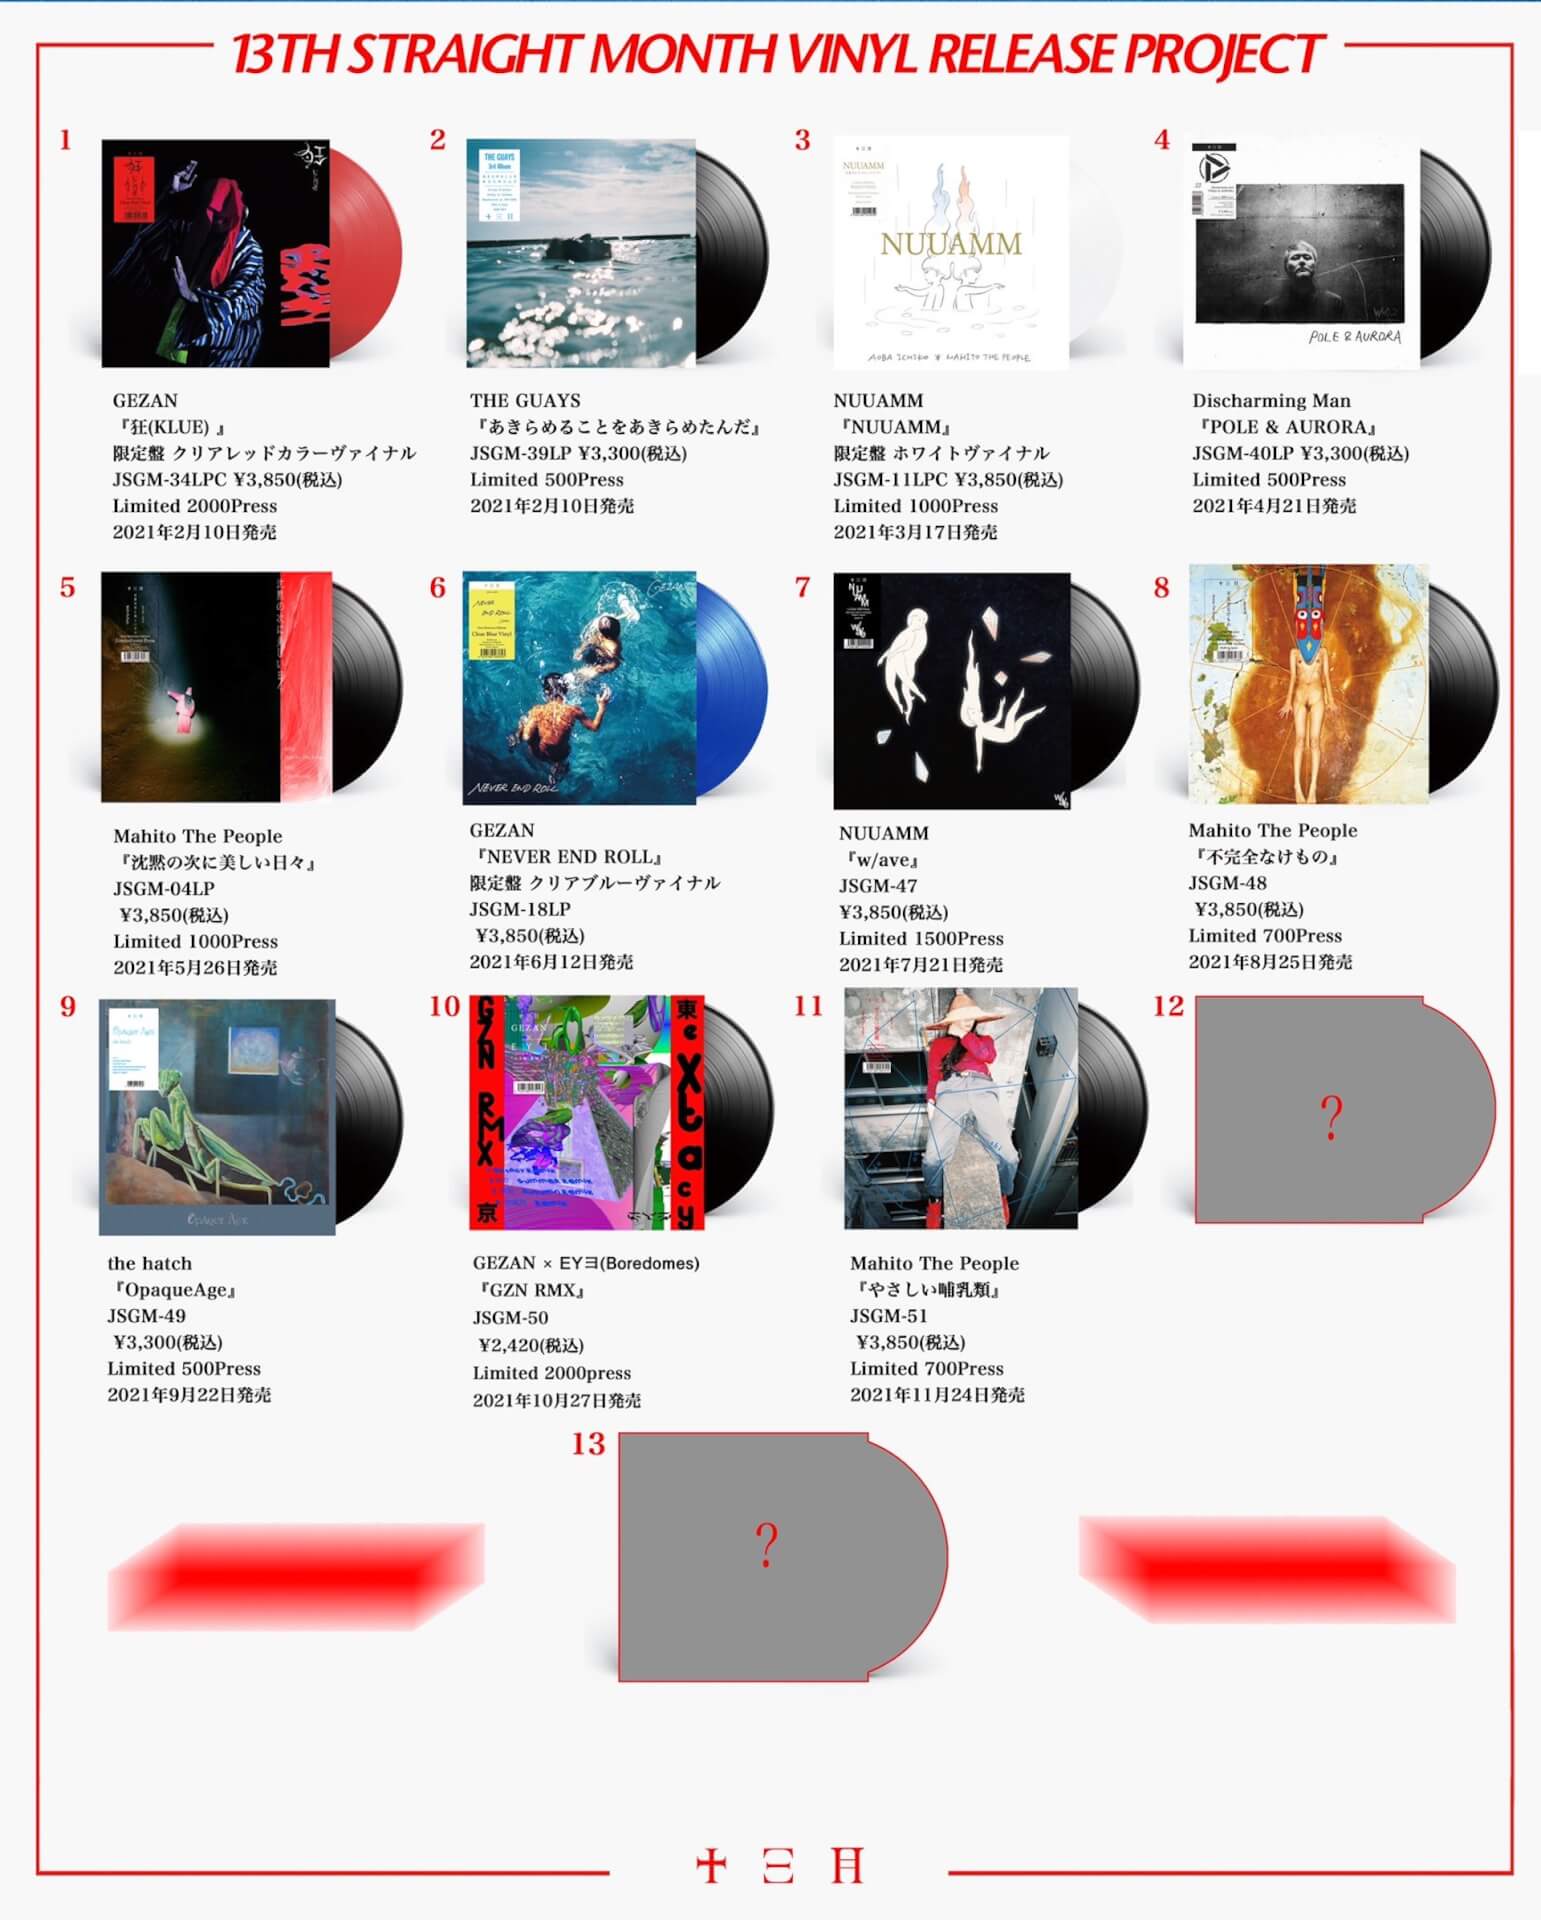 〈十三月〉13ヶ月連続レコードリリース第11弾！マヒトゥ・ザ・ピーポーの4thアルバム『やさしい哺乳類』が発売決定 music211015-jusangatsurecords-01